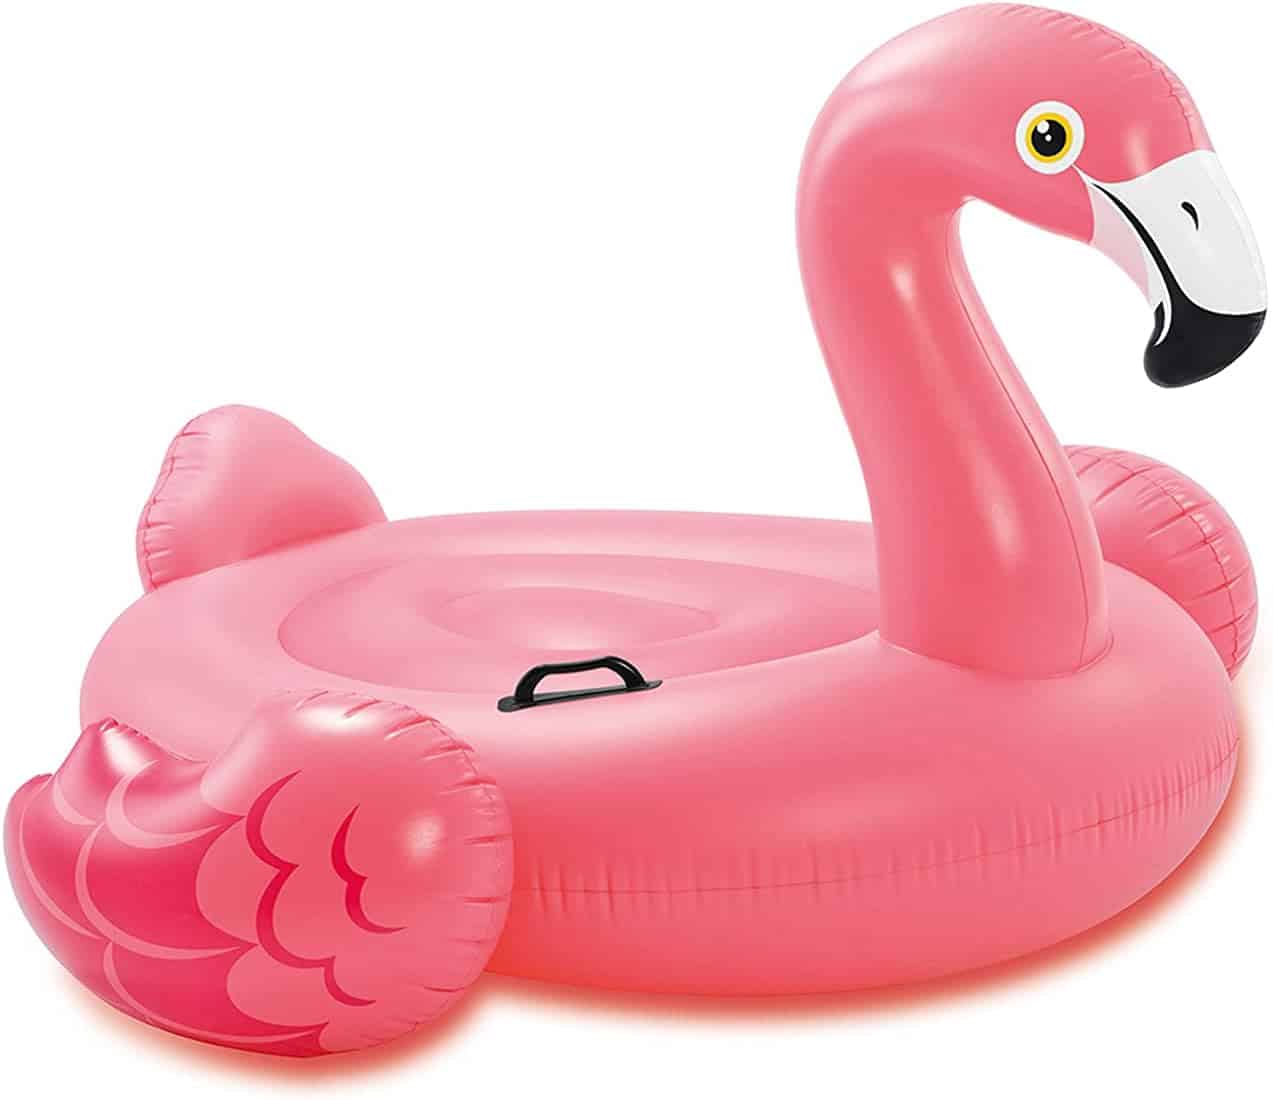 Inflatable flamingo.